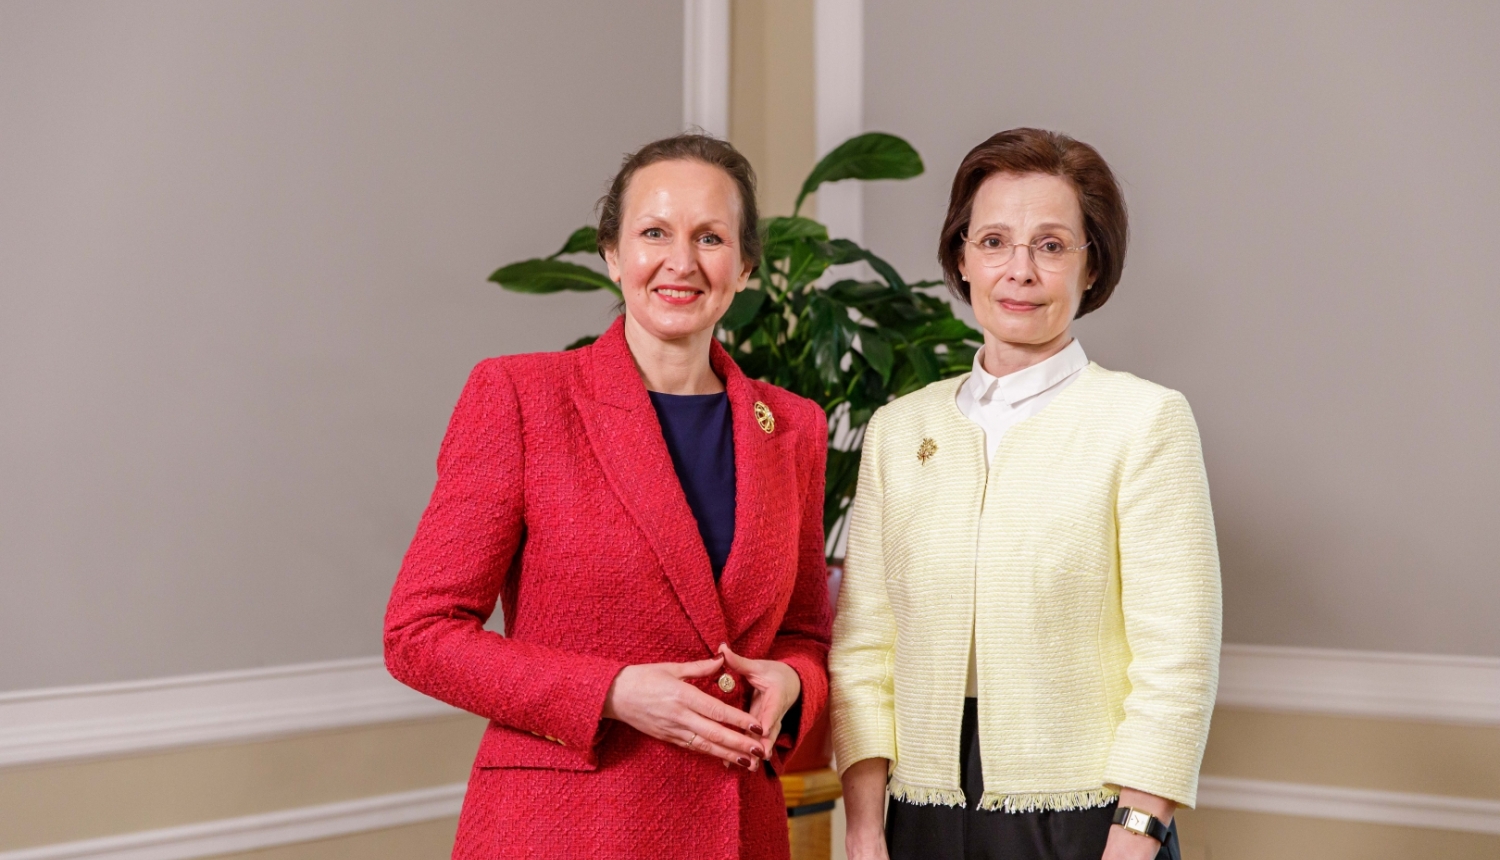 No kreisās: veselības ministre Līga Meņģelsone un Andra Levite Rīgas pils Ģerboņu zālē pirms tikšanās 2023. gaa 27. aprīlī. 